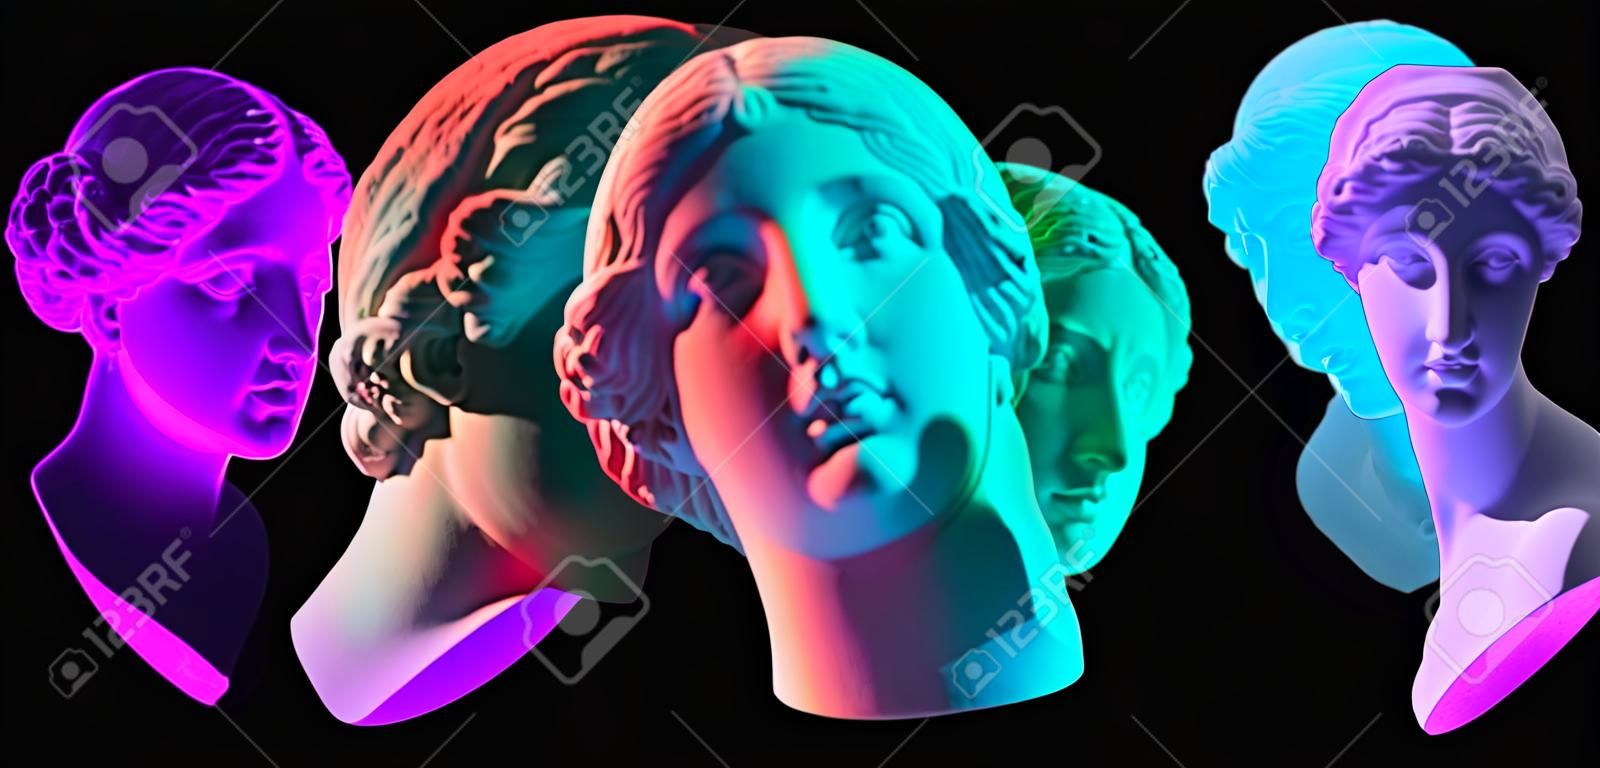 Posąg Wenus z Milo. Kreatywna koncepcja kolorowy neon obraz z starożytną grecką rzeźbą Wenus lub głowy Afrodyty. Webpunk, vaporwave i surrealistyczny styl artystyczny. Pojedynczo na czarno.